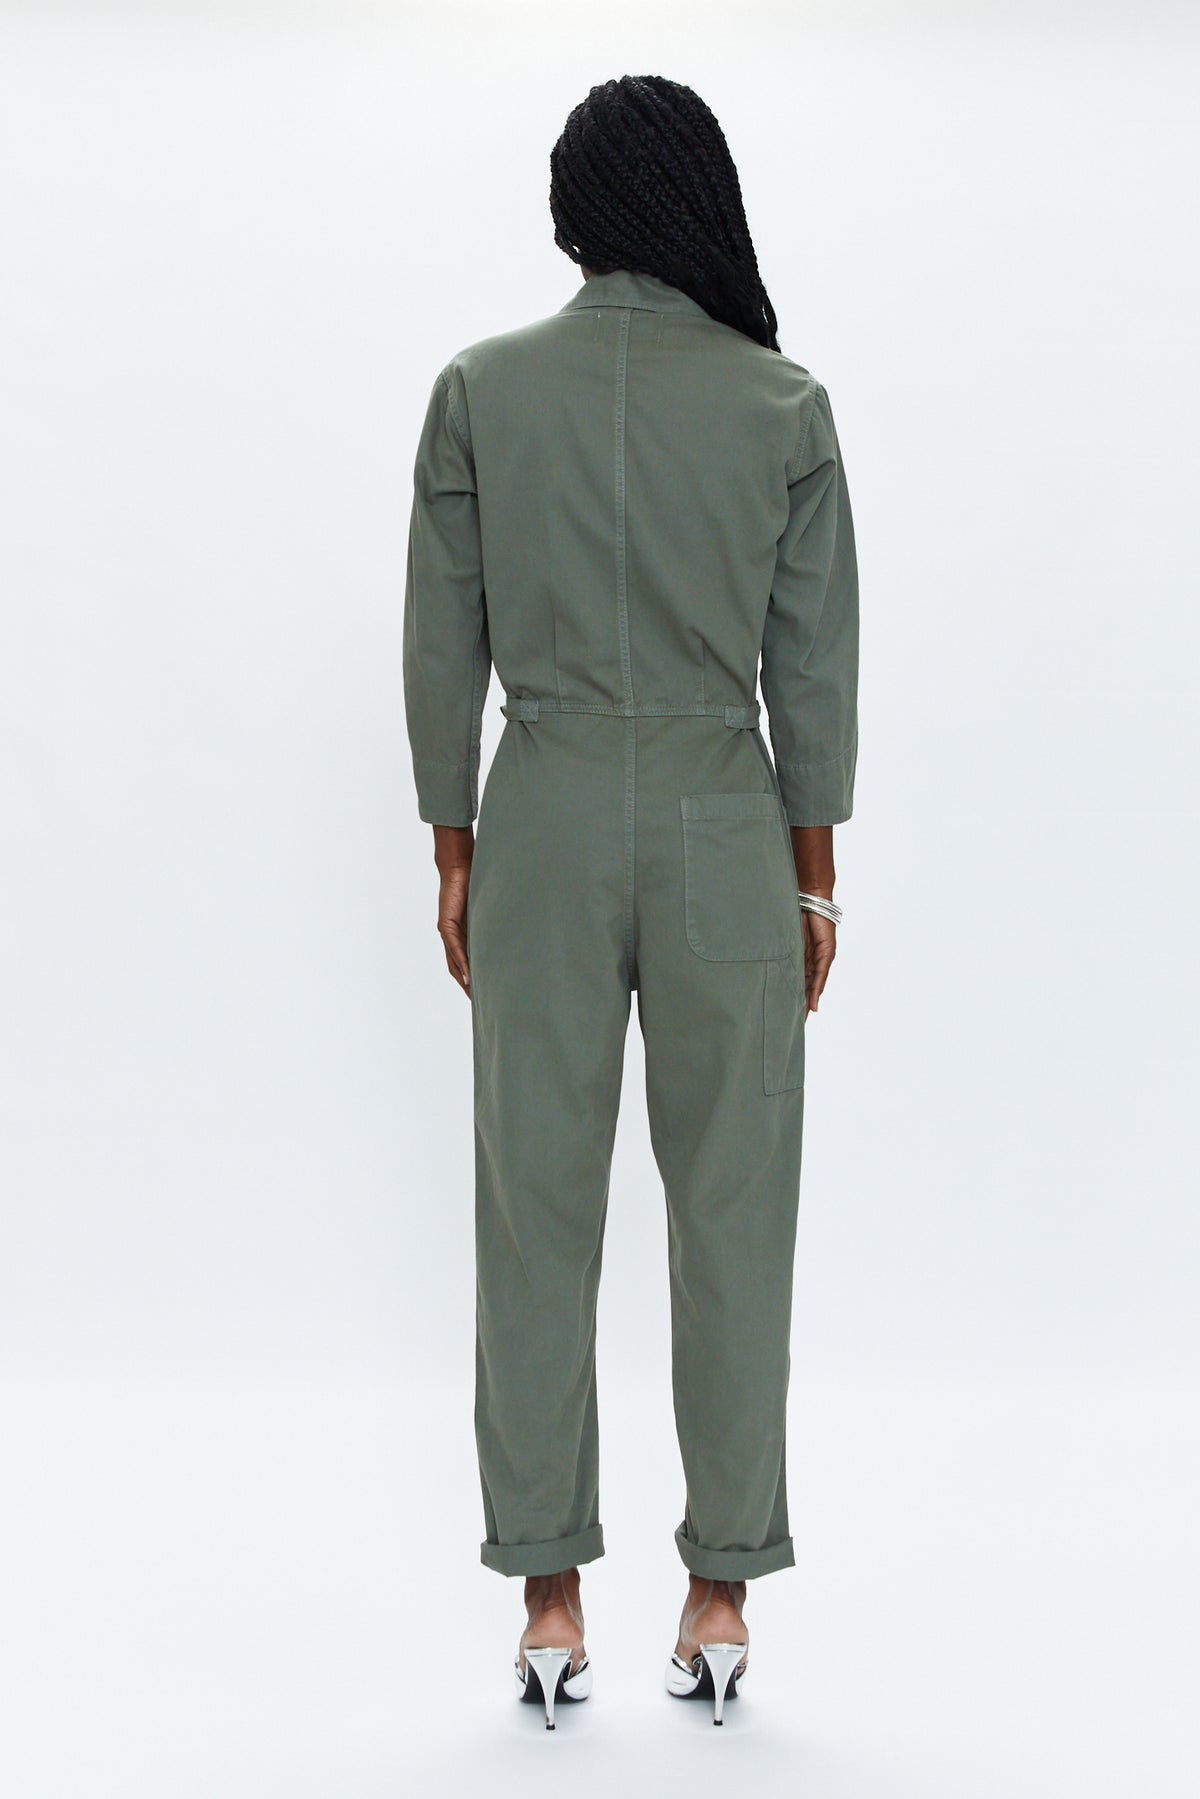 Tanner Long Sleeve Field Suit - Vine